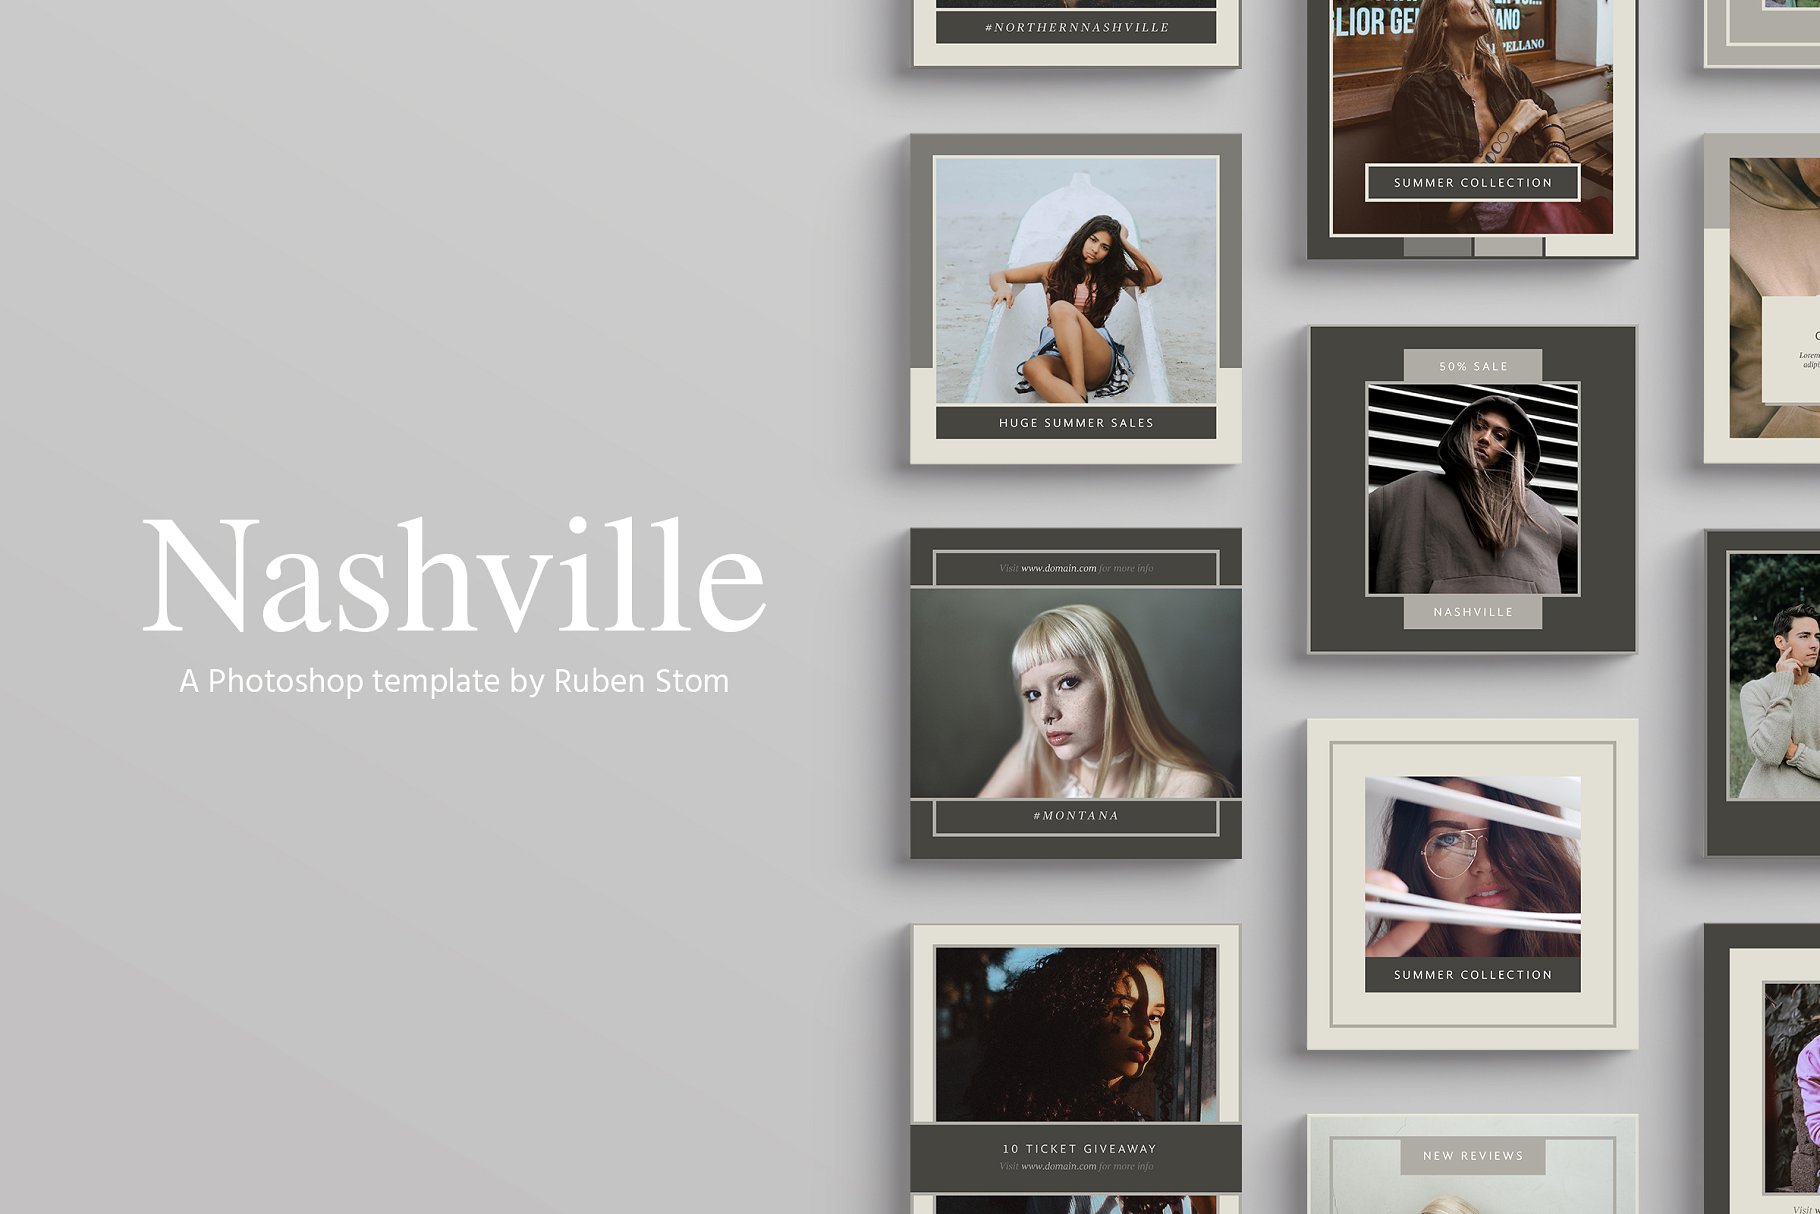 时尚模特摄影主题社交媒体贴图模板蚂蚁素材精选 Nashville Social Media Templates插图